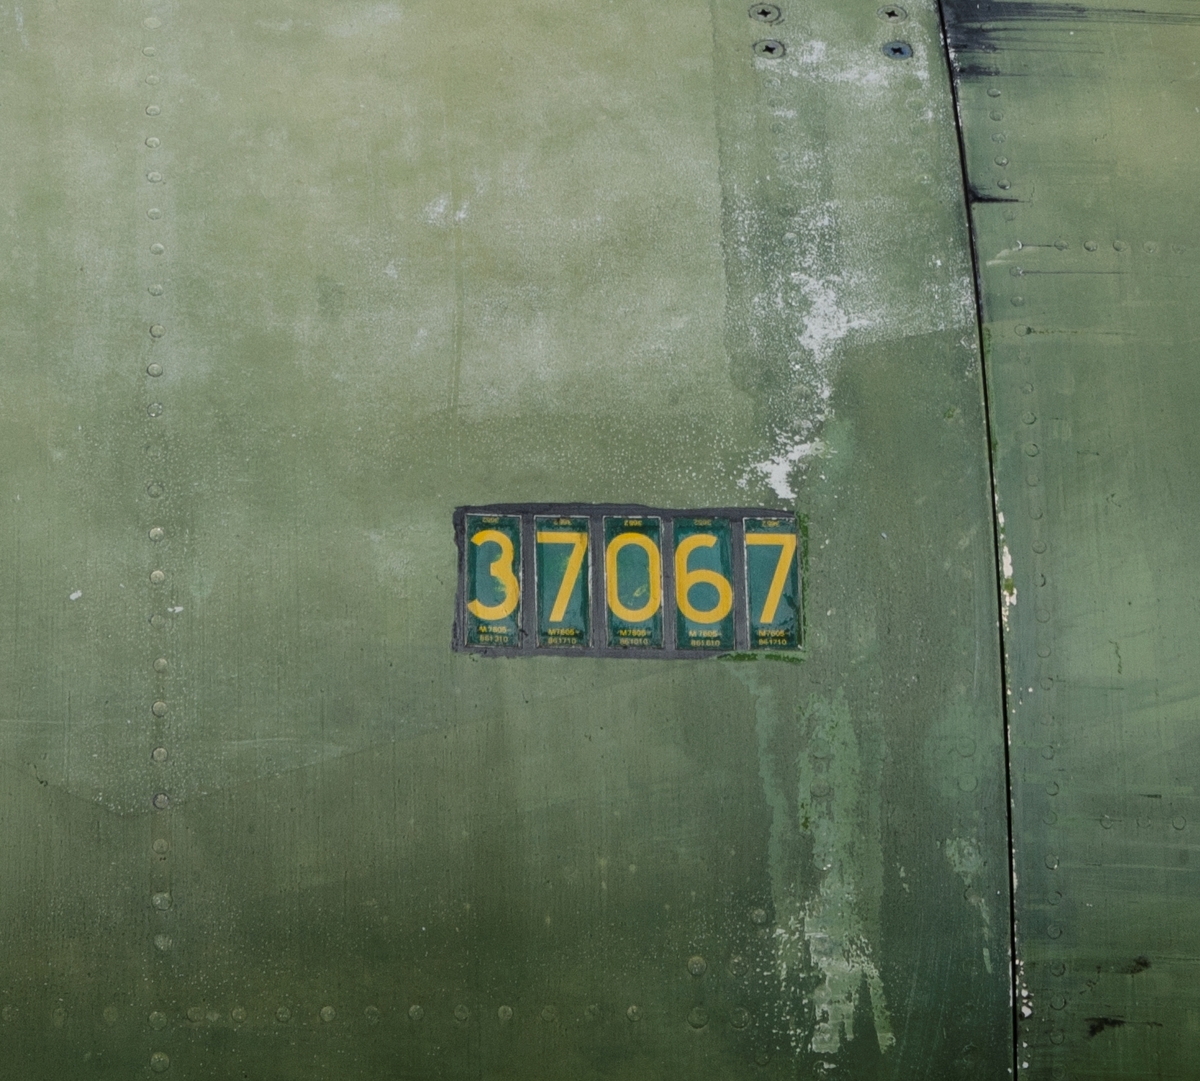 Attack- jakt och spaningsflygplan AJS 37
Saab 37 Viggen

Märkning: På framkroppen kronmärke och flottiljnummer 15 och på fenan kodsiffra 37.